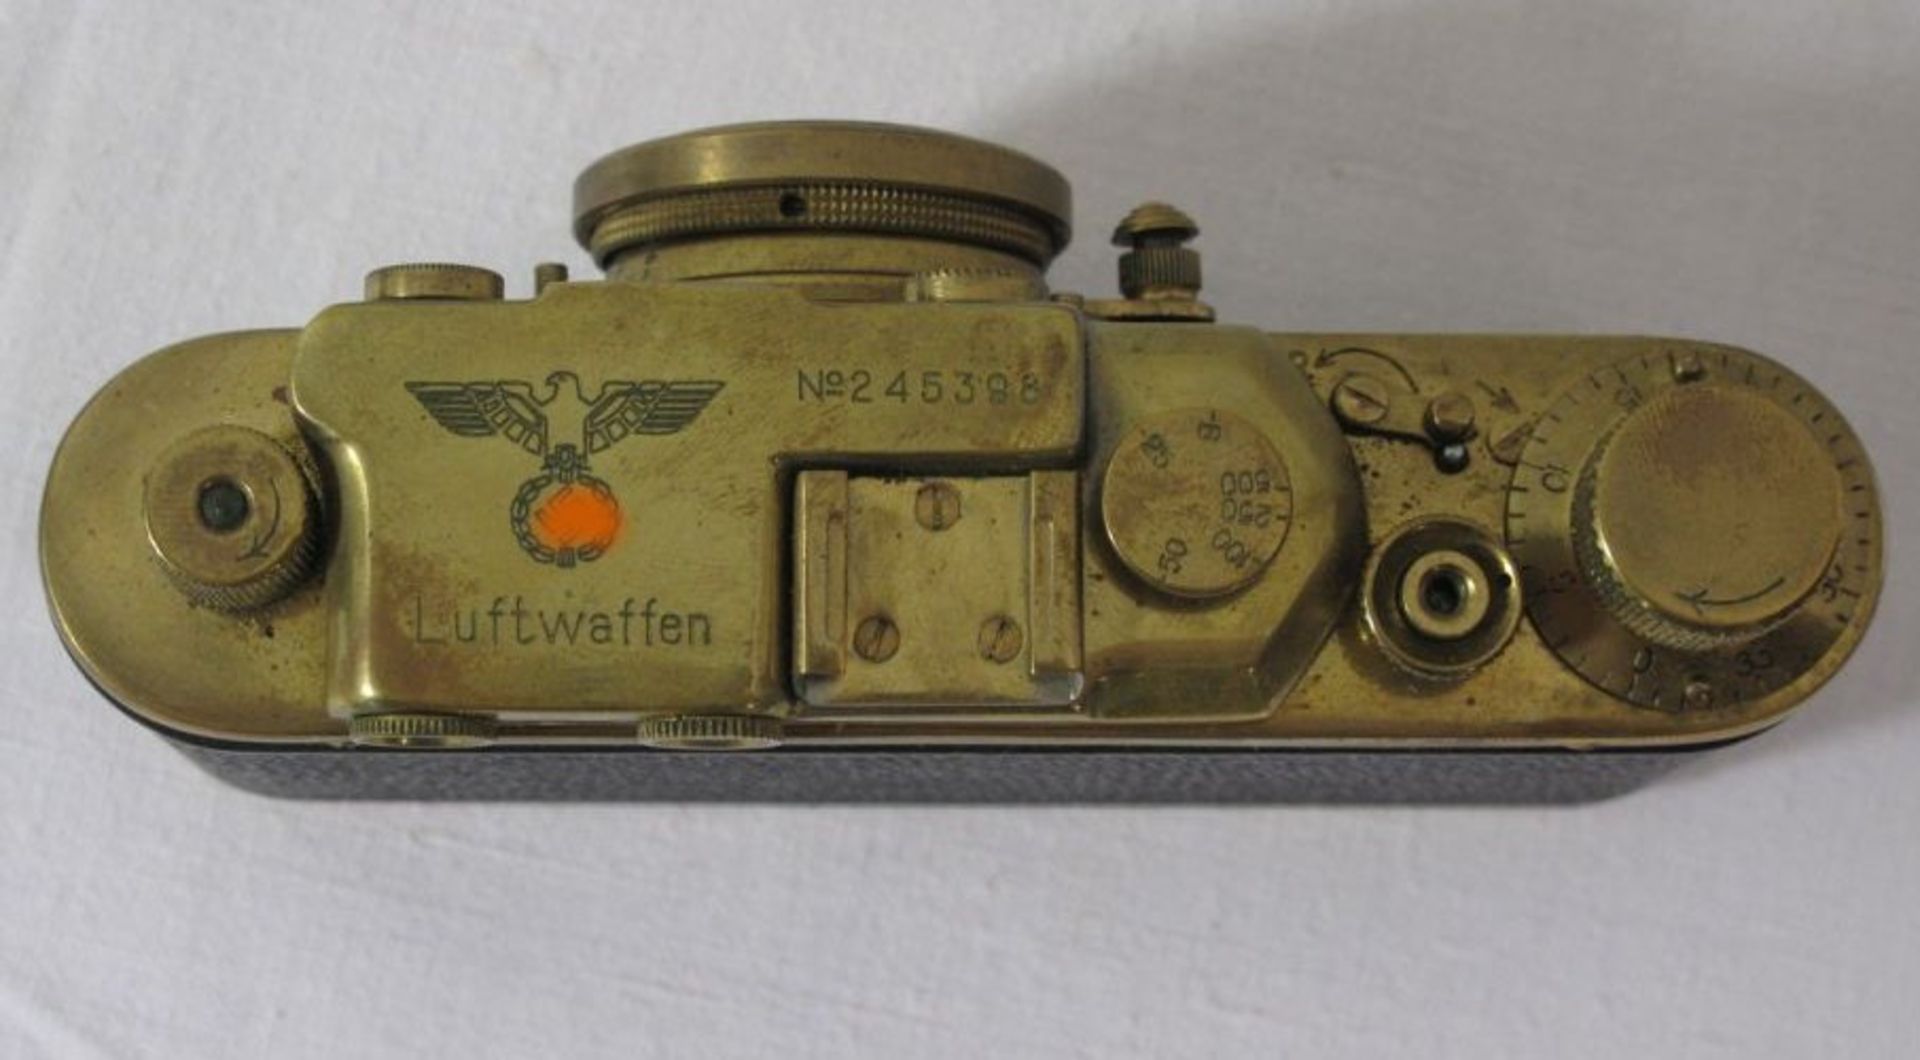 Leica-Nachbau "Luftwaffe", Sammleranfertigung, No. 245398, Funktion nicht geprüft. - Bild 3 aus 3